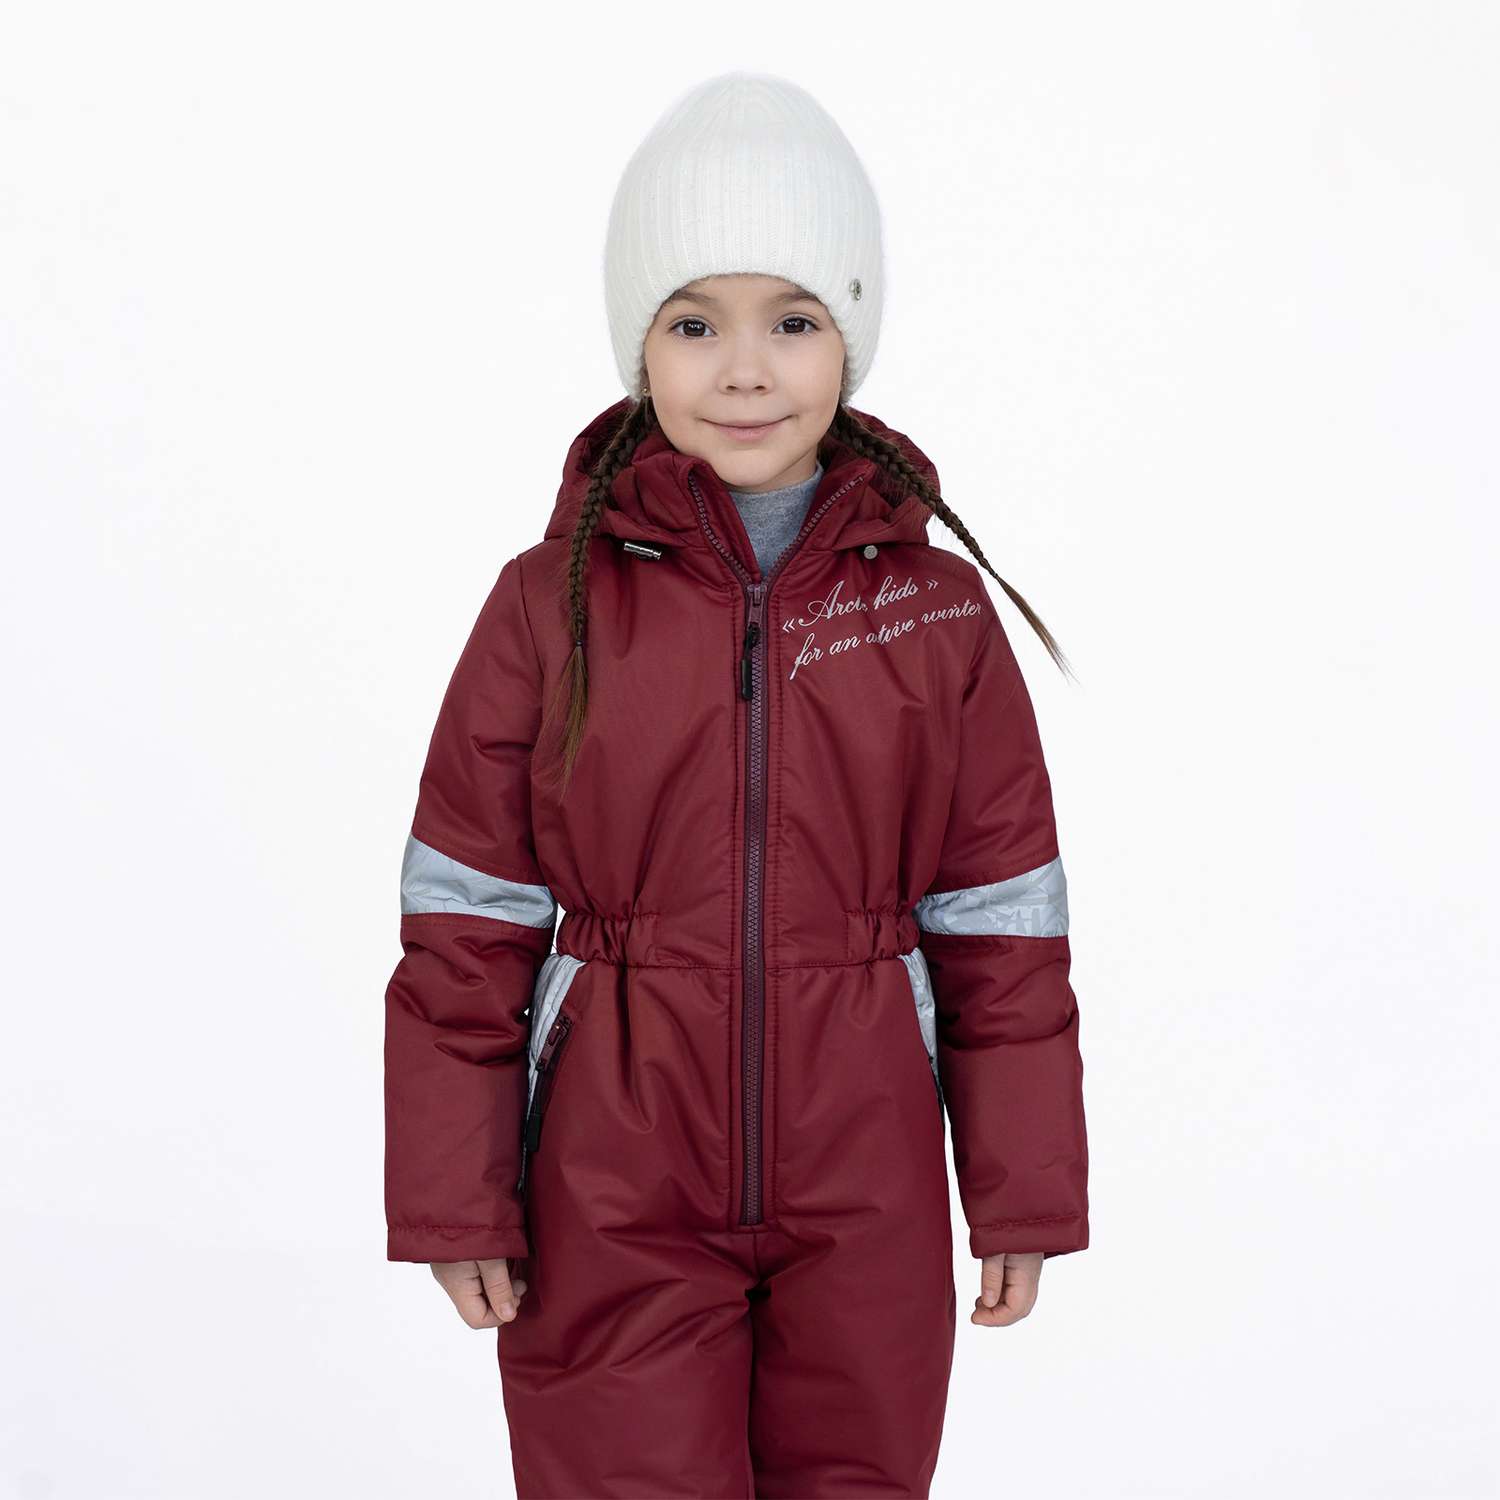 Комбинезон Arctic kids 30-041 бордо - фото 11